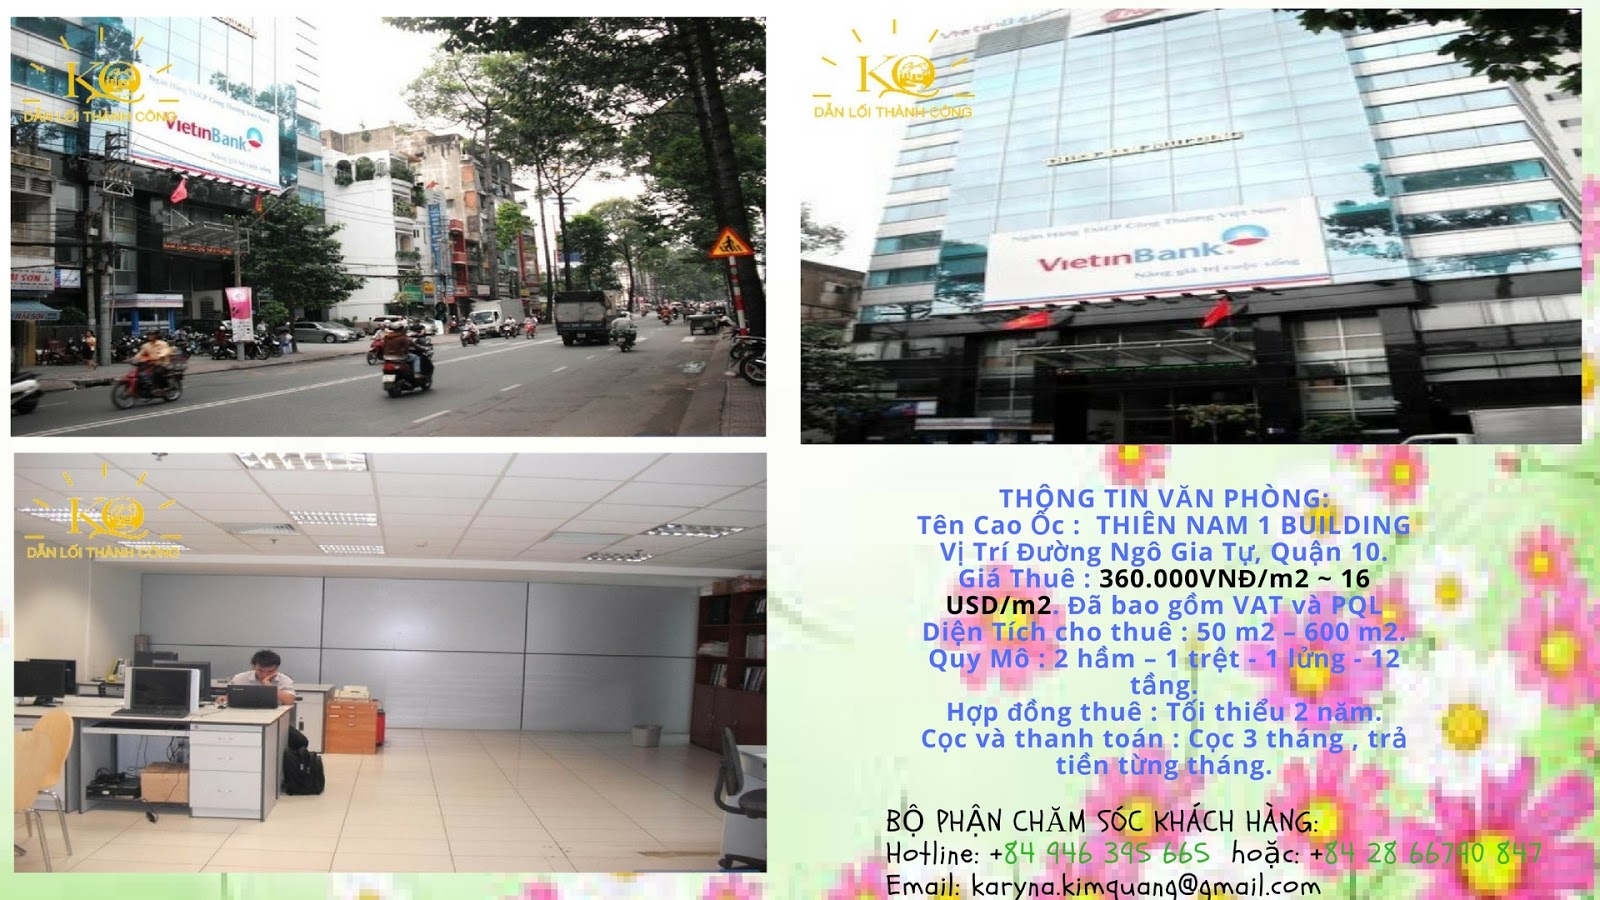 Cho thuê văn phòng quận 10 Thiên Nam 1 building